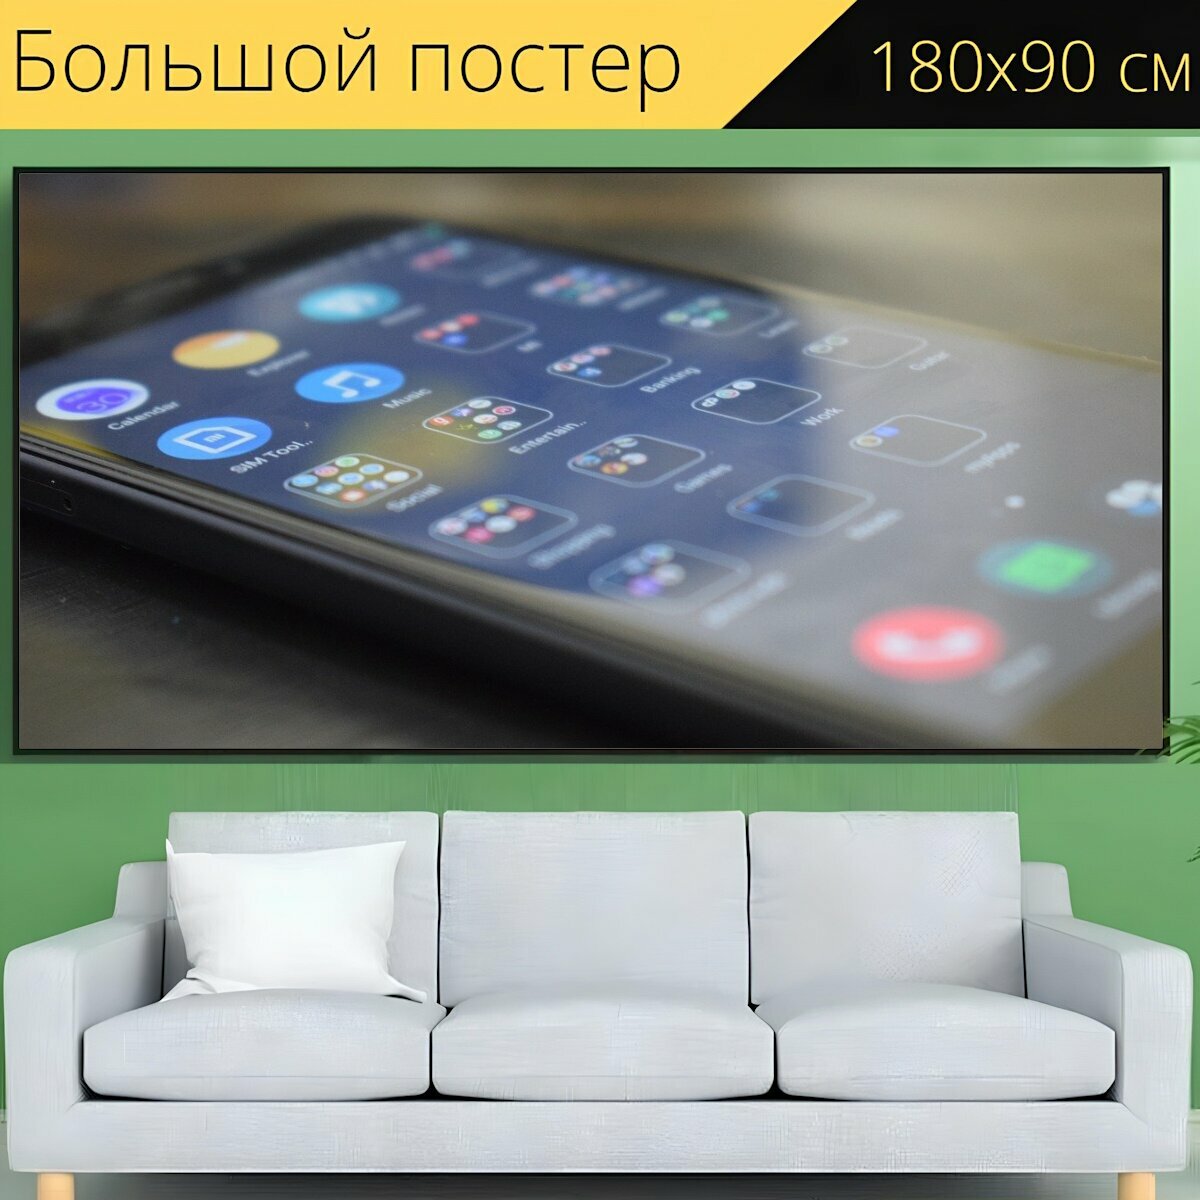 Большой постер "Смартфон, программы, мобильный" 180 x 90 см. для интерьера